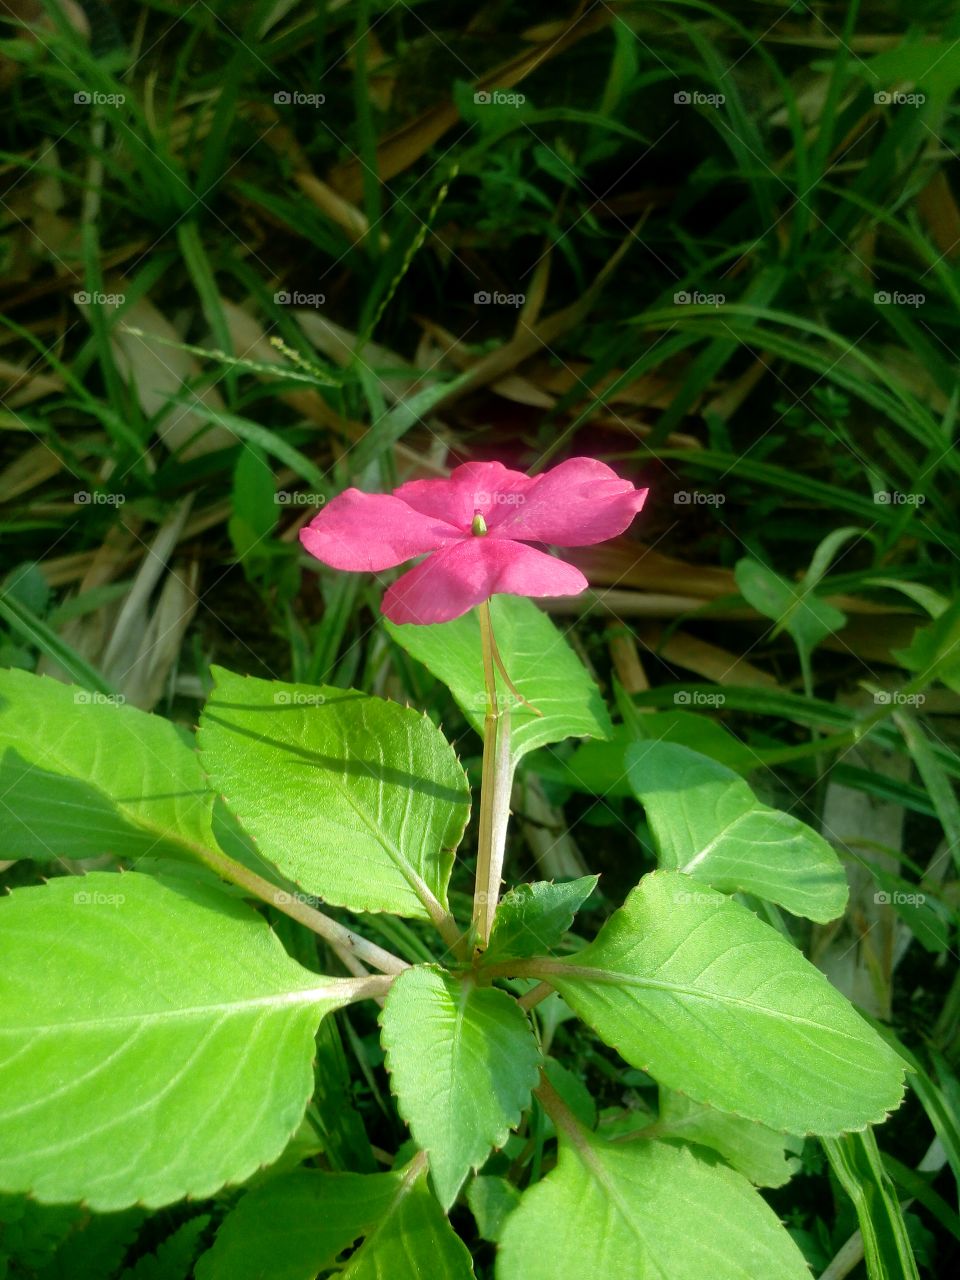 Flor rosa, com folhas verdes, e um pequeno gramado alto atrás, as folhas são detalhadas com pequenas veias e a flor, segura por um caule bege tem cinco pétalas rosa choque